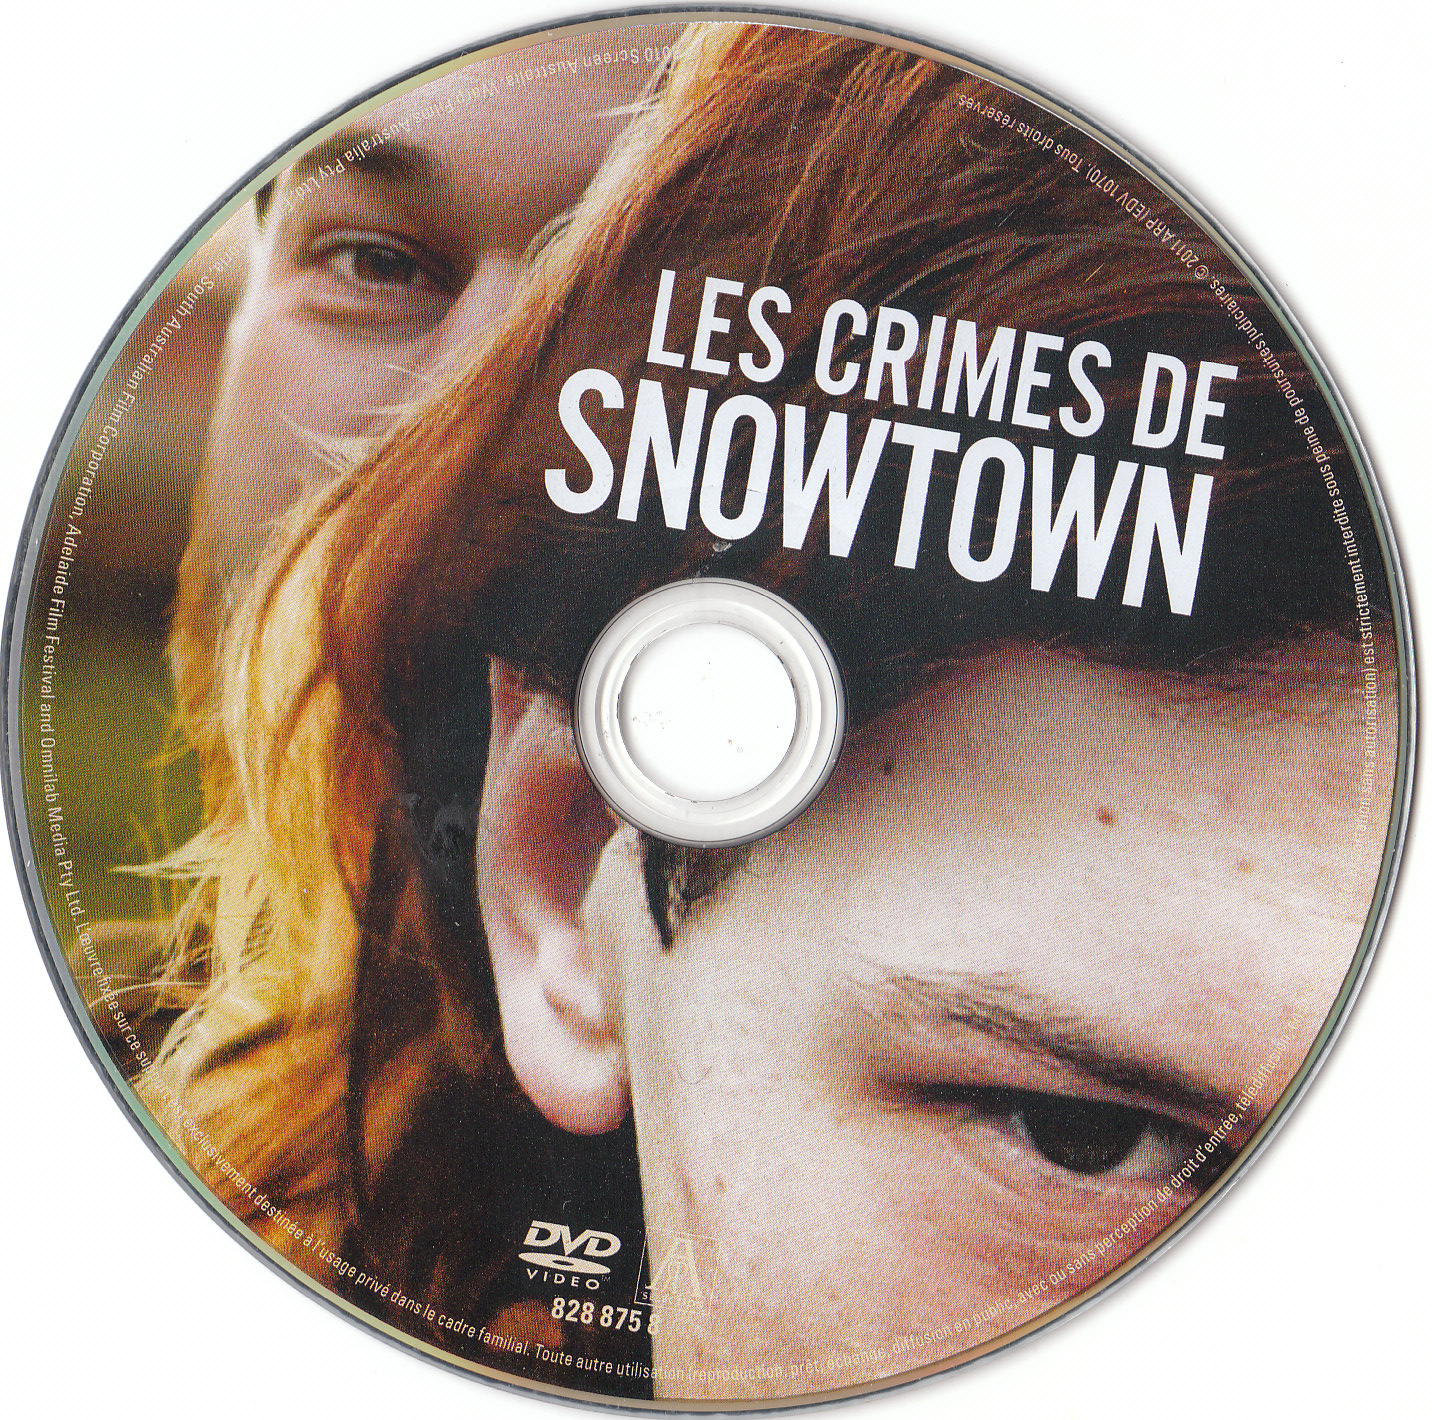 Les crimes de snowtown